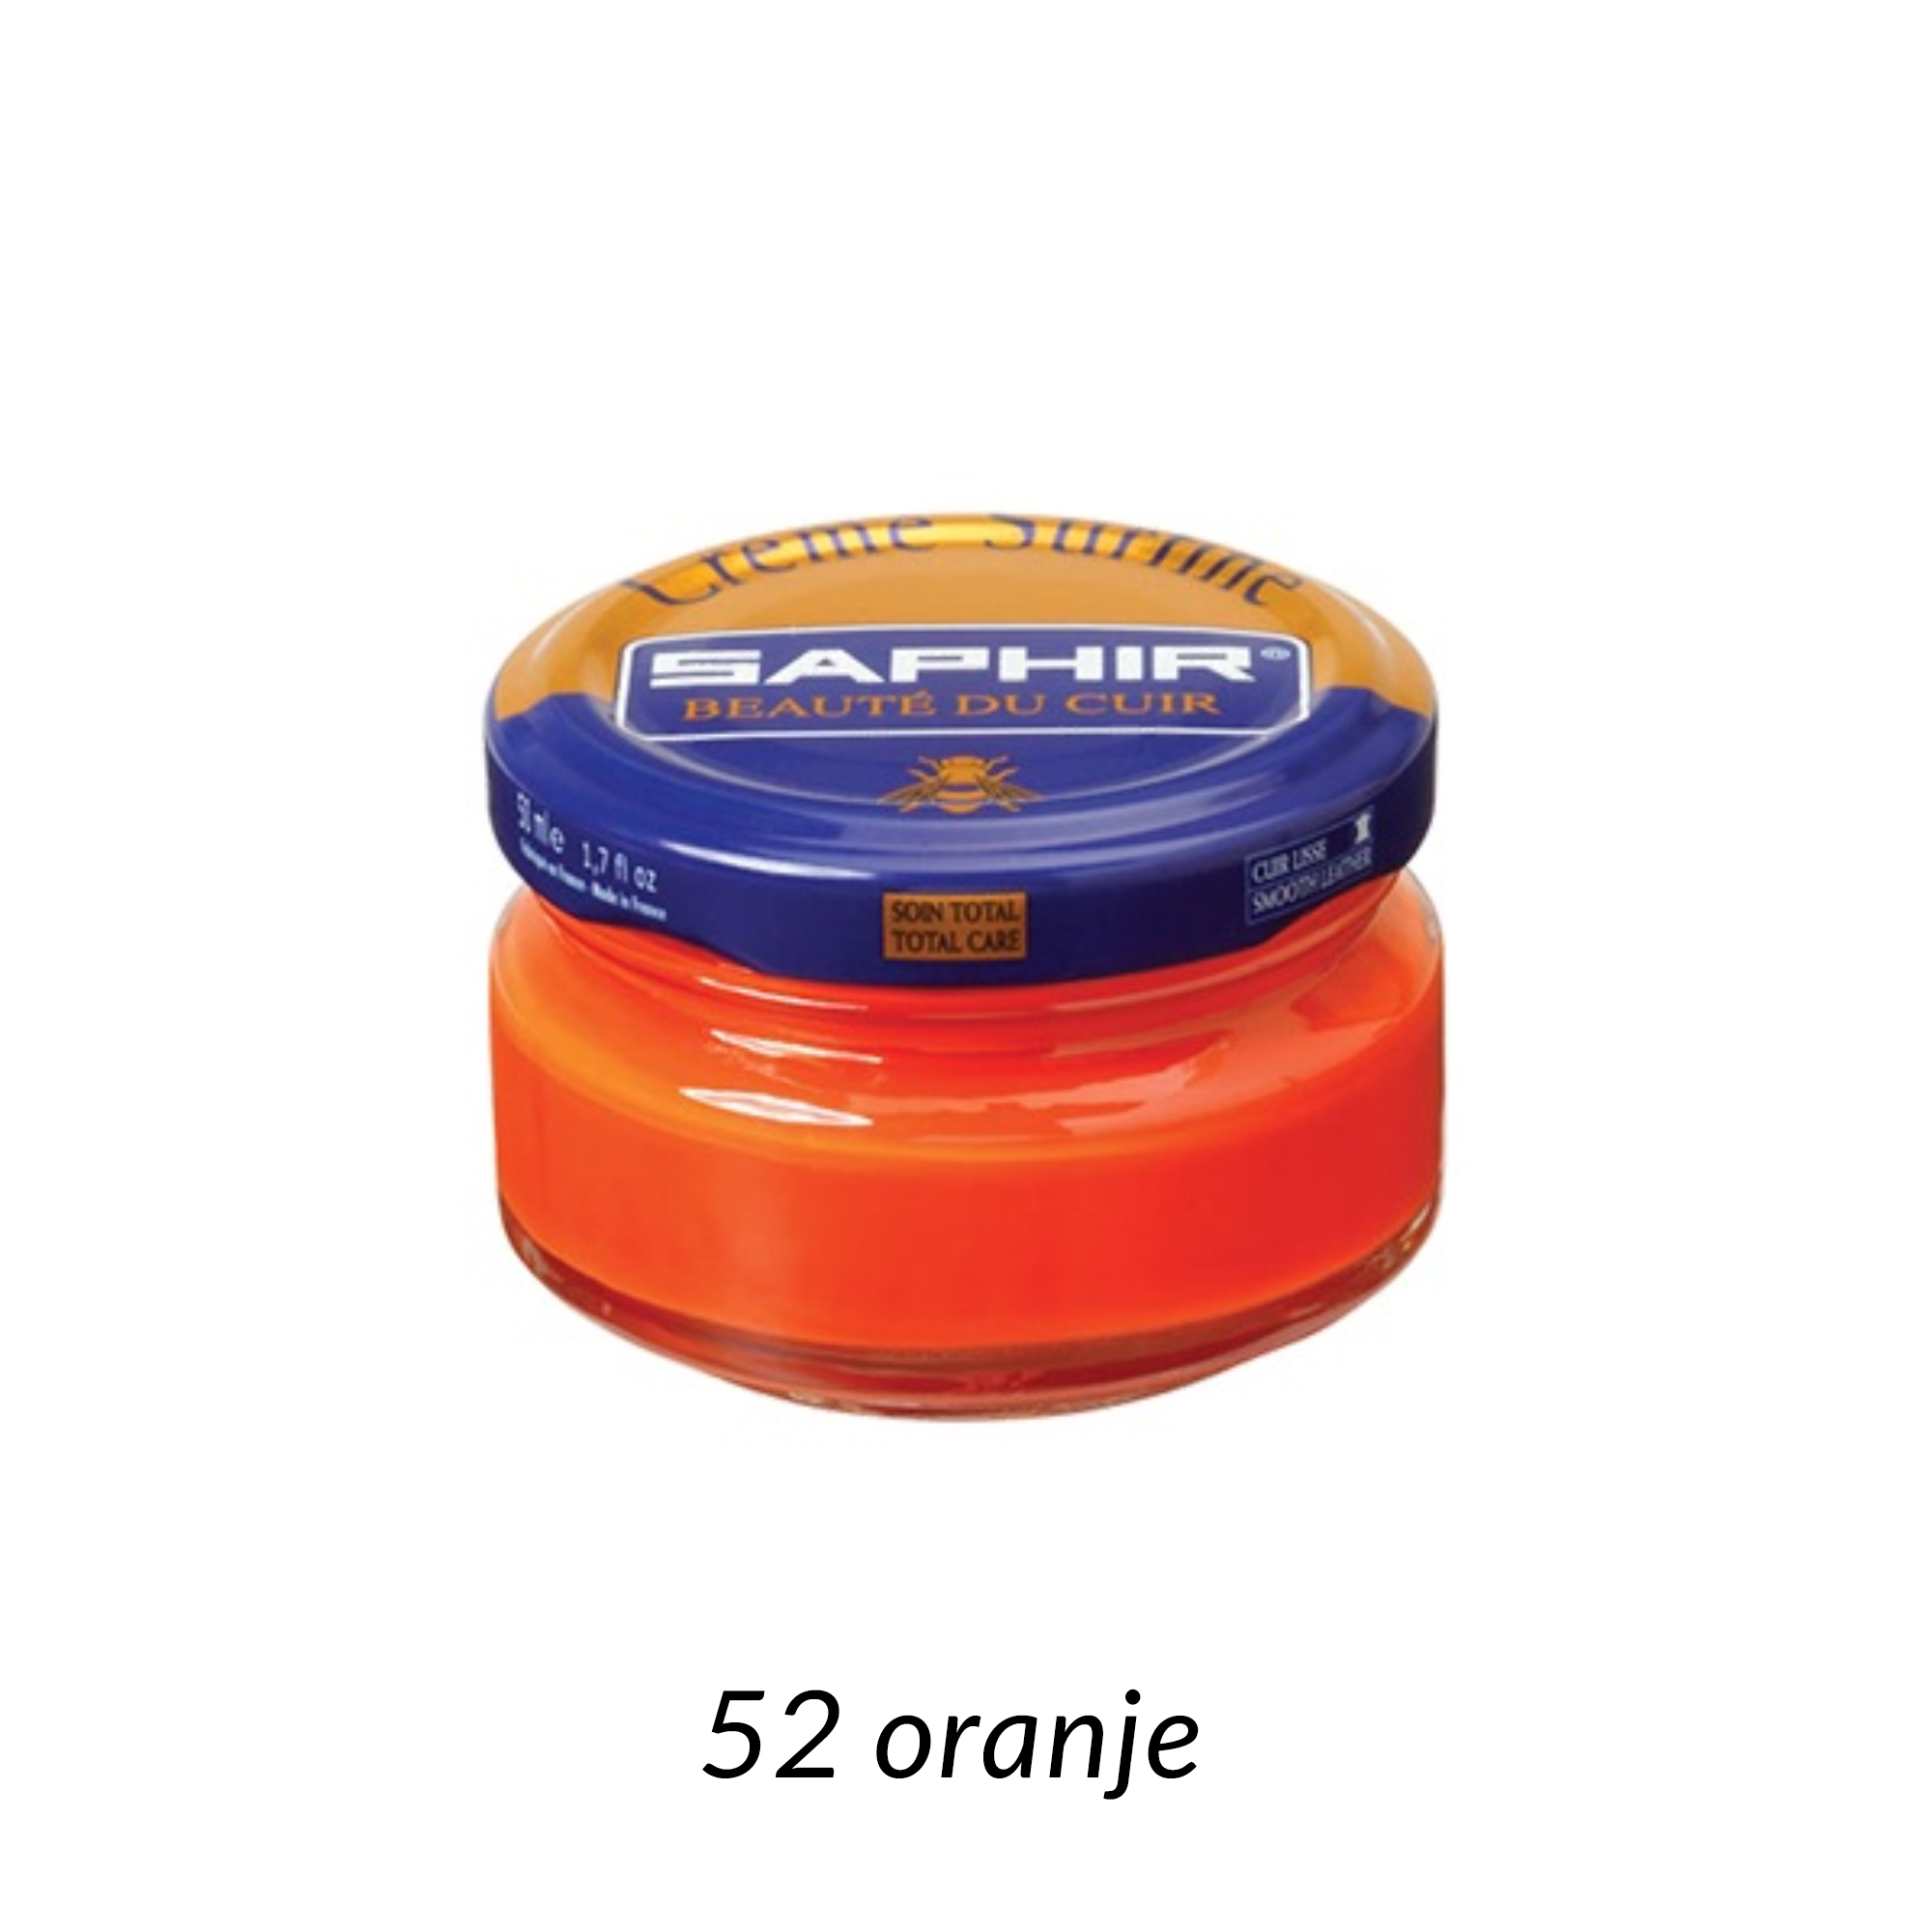 Saphir Creme Surfine Oranje